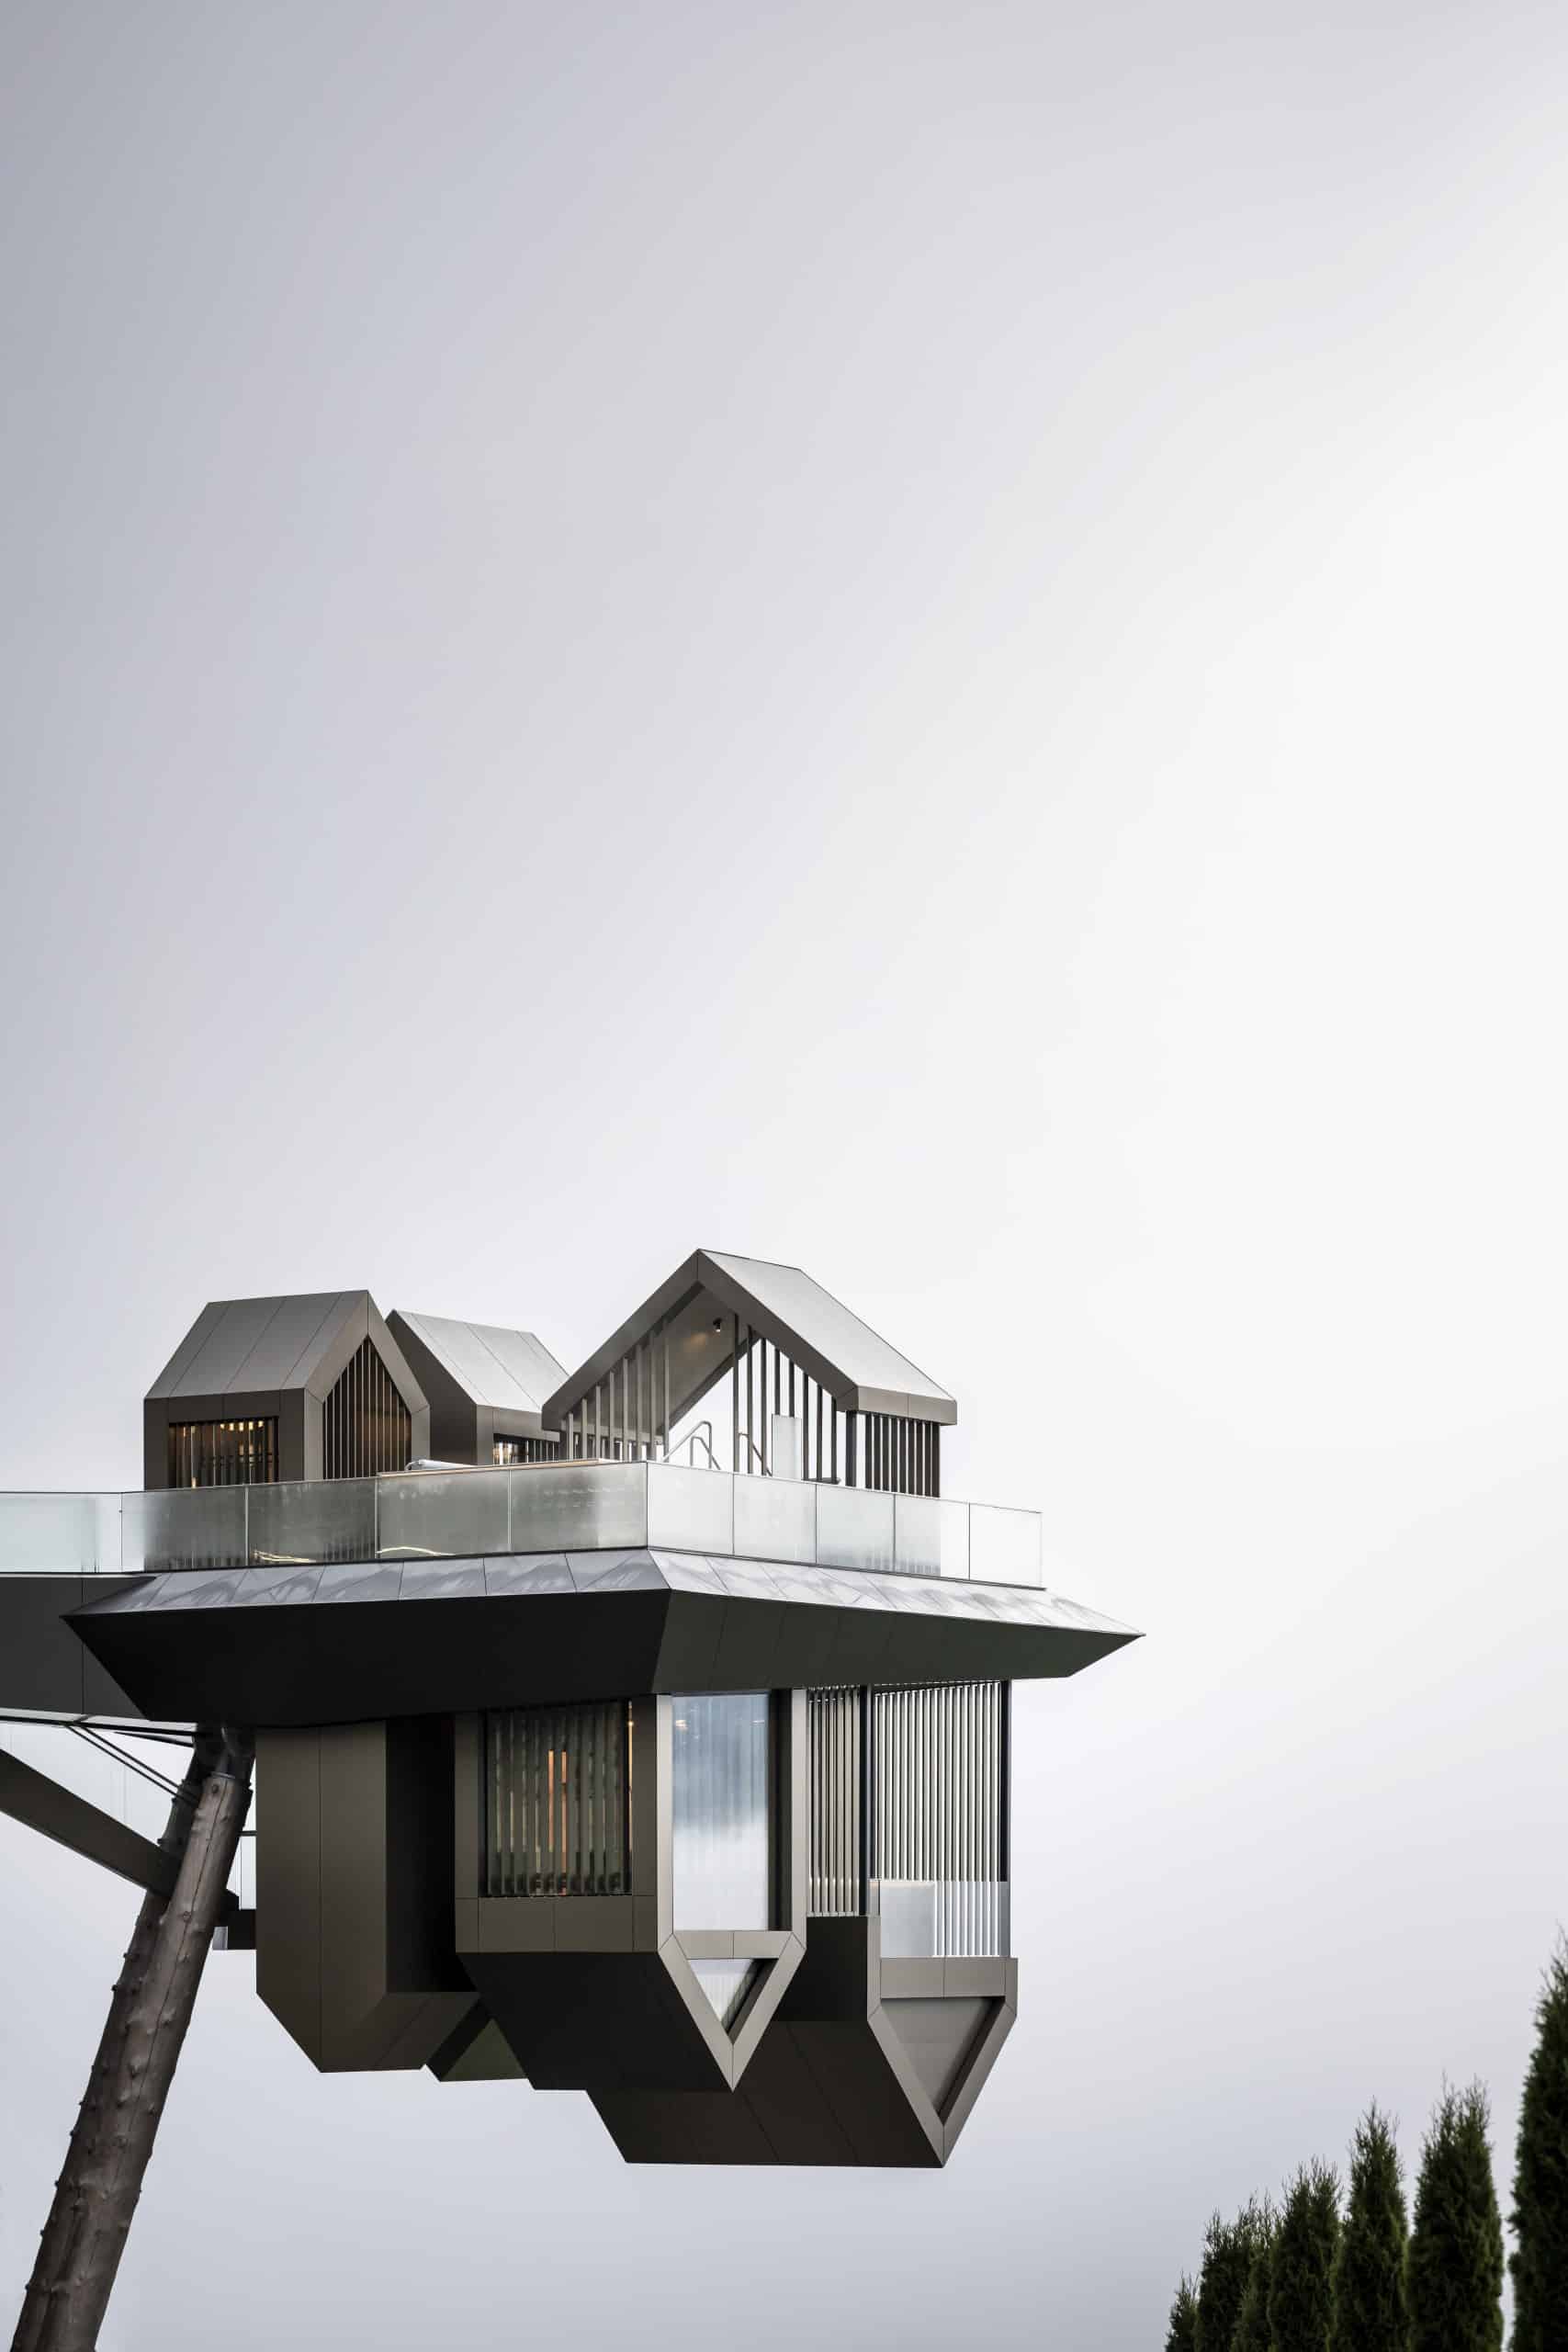 Blick auf eine Plattform, auf und unter der kleine Hütten stehen und hängen. Noa* Network of Architecture, Hub of Huts, Olang, Foto: ©AlexFilz